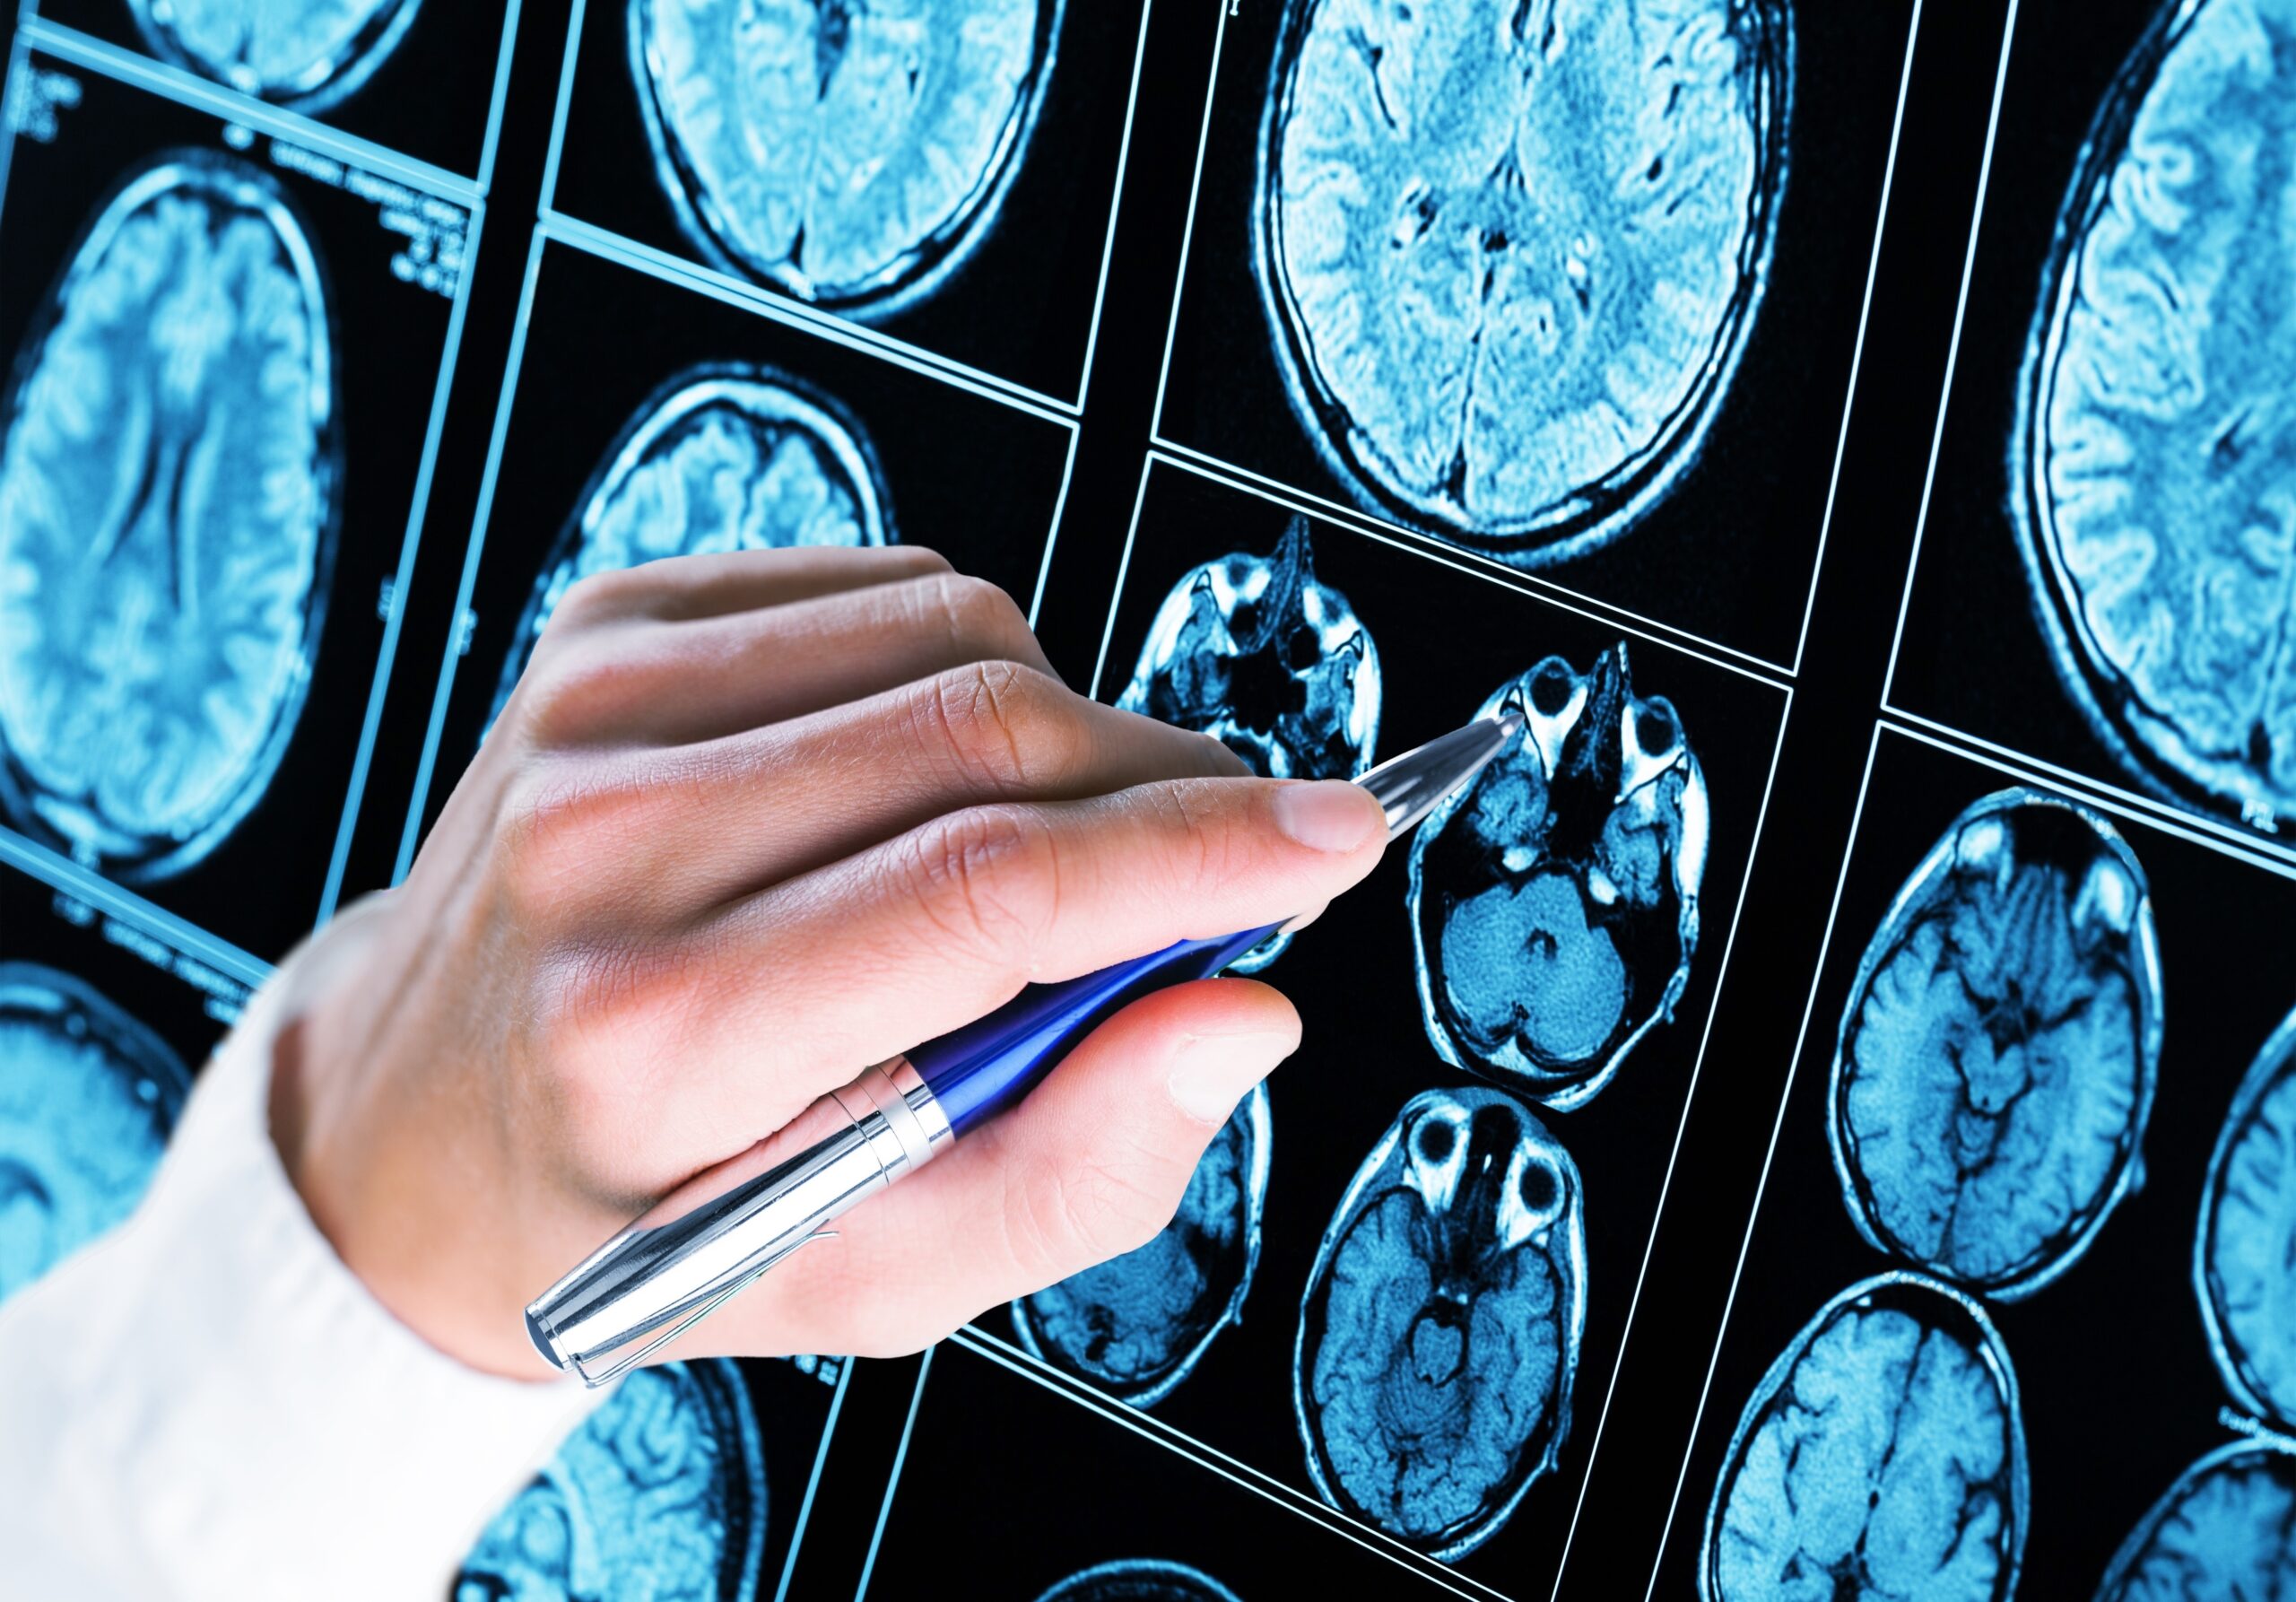 Choroby mózgu muszą być traktowane priorytetowo – apel ekspertów podczas posiedzenia Parlamentarnego Zespołu ds. Chorób Neurologicznych